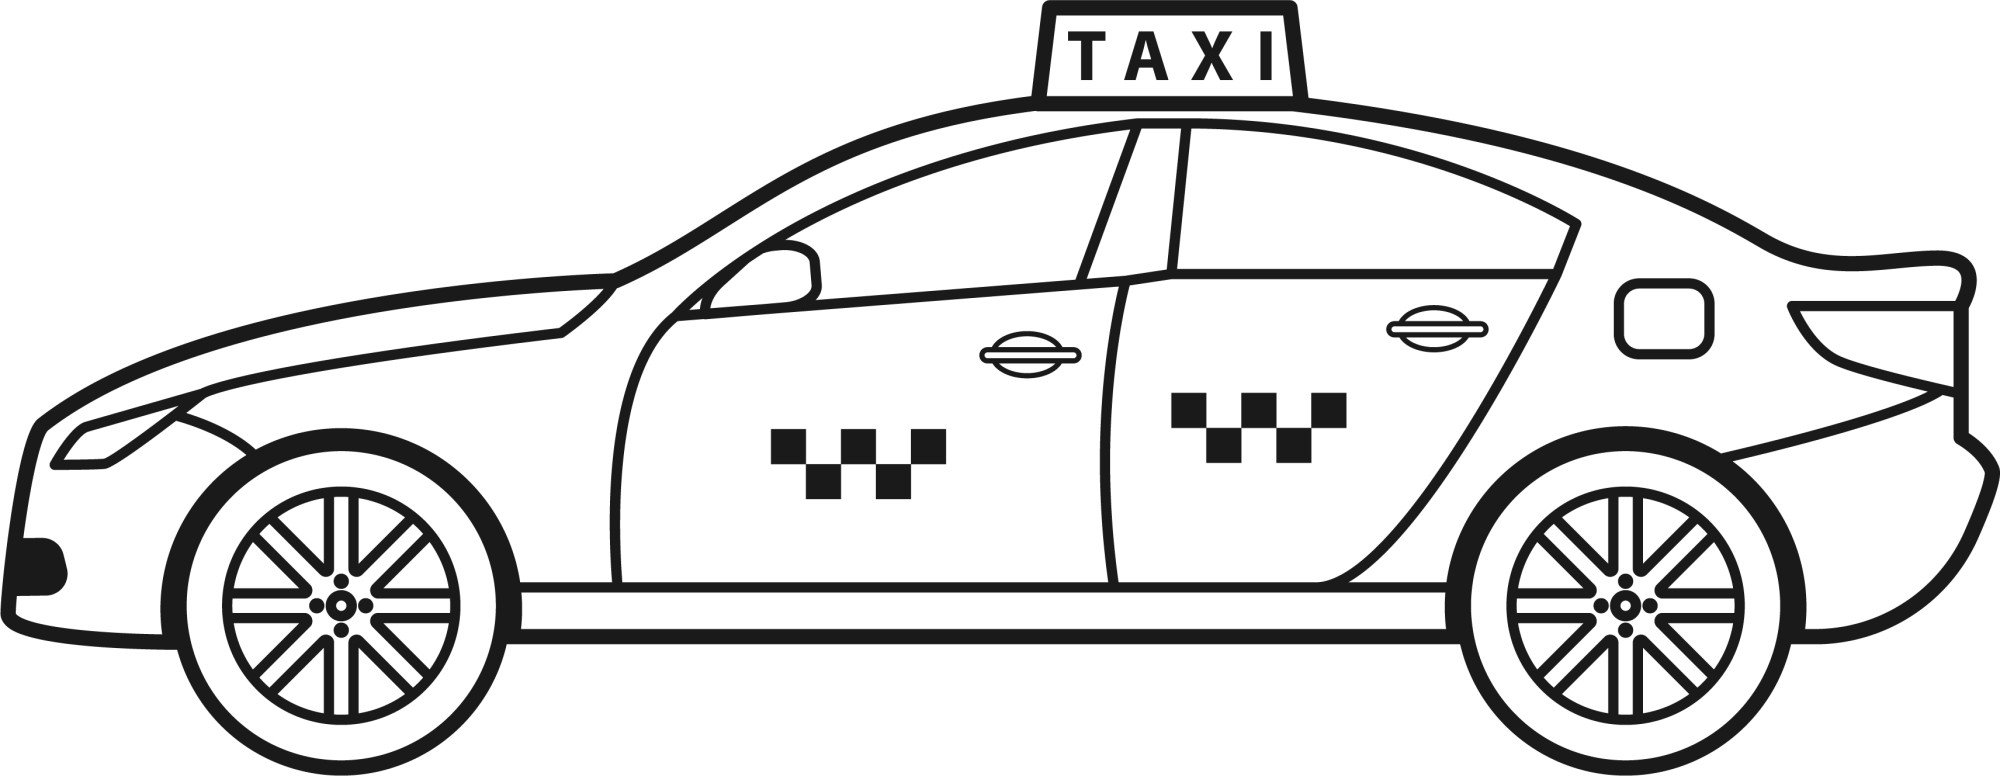 Раскраска для детей: машина такси